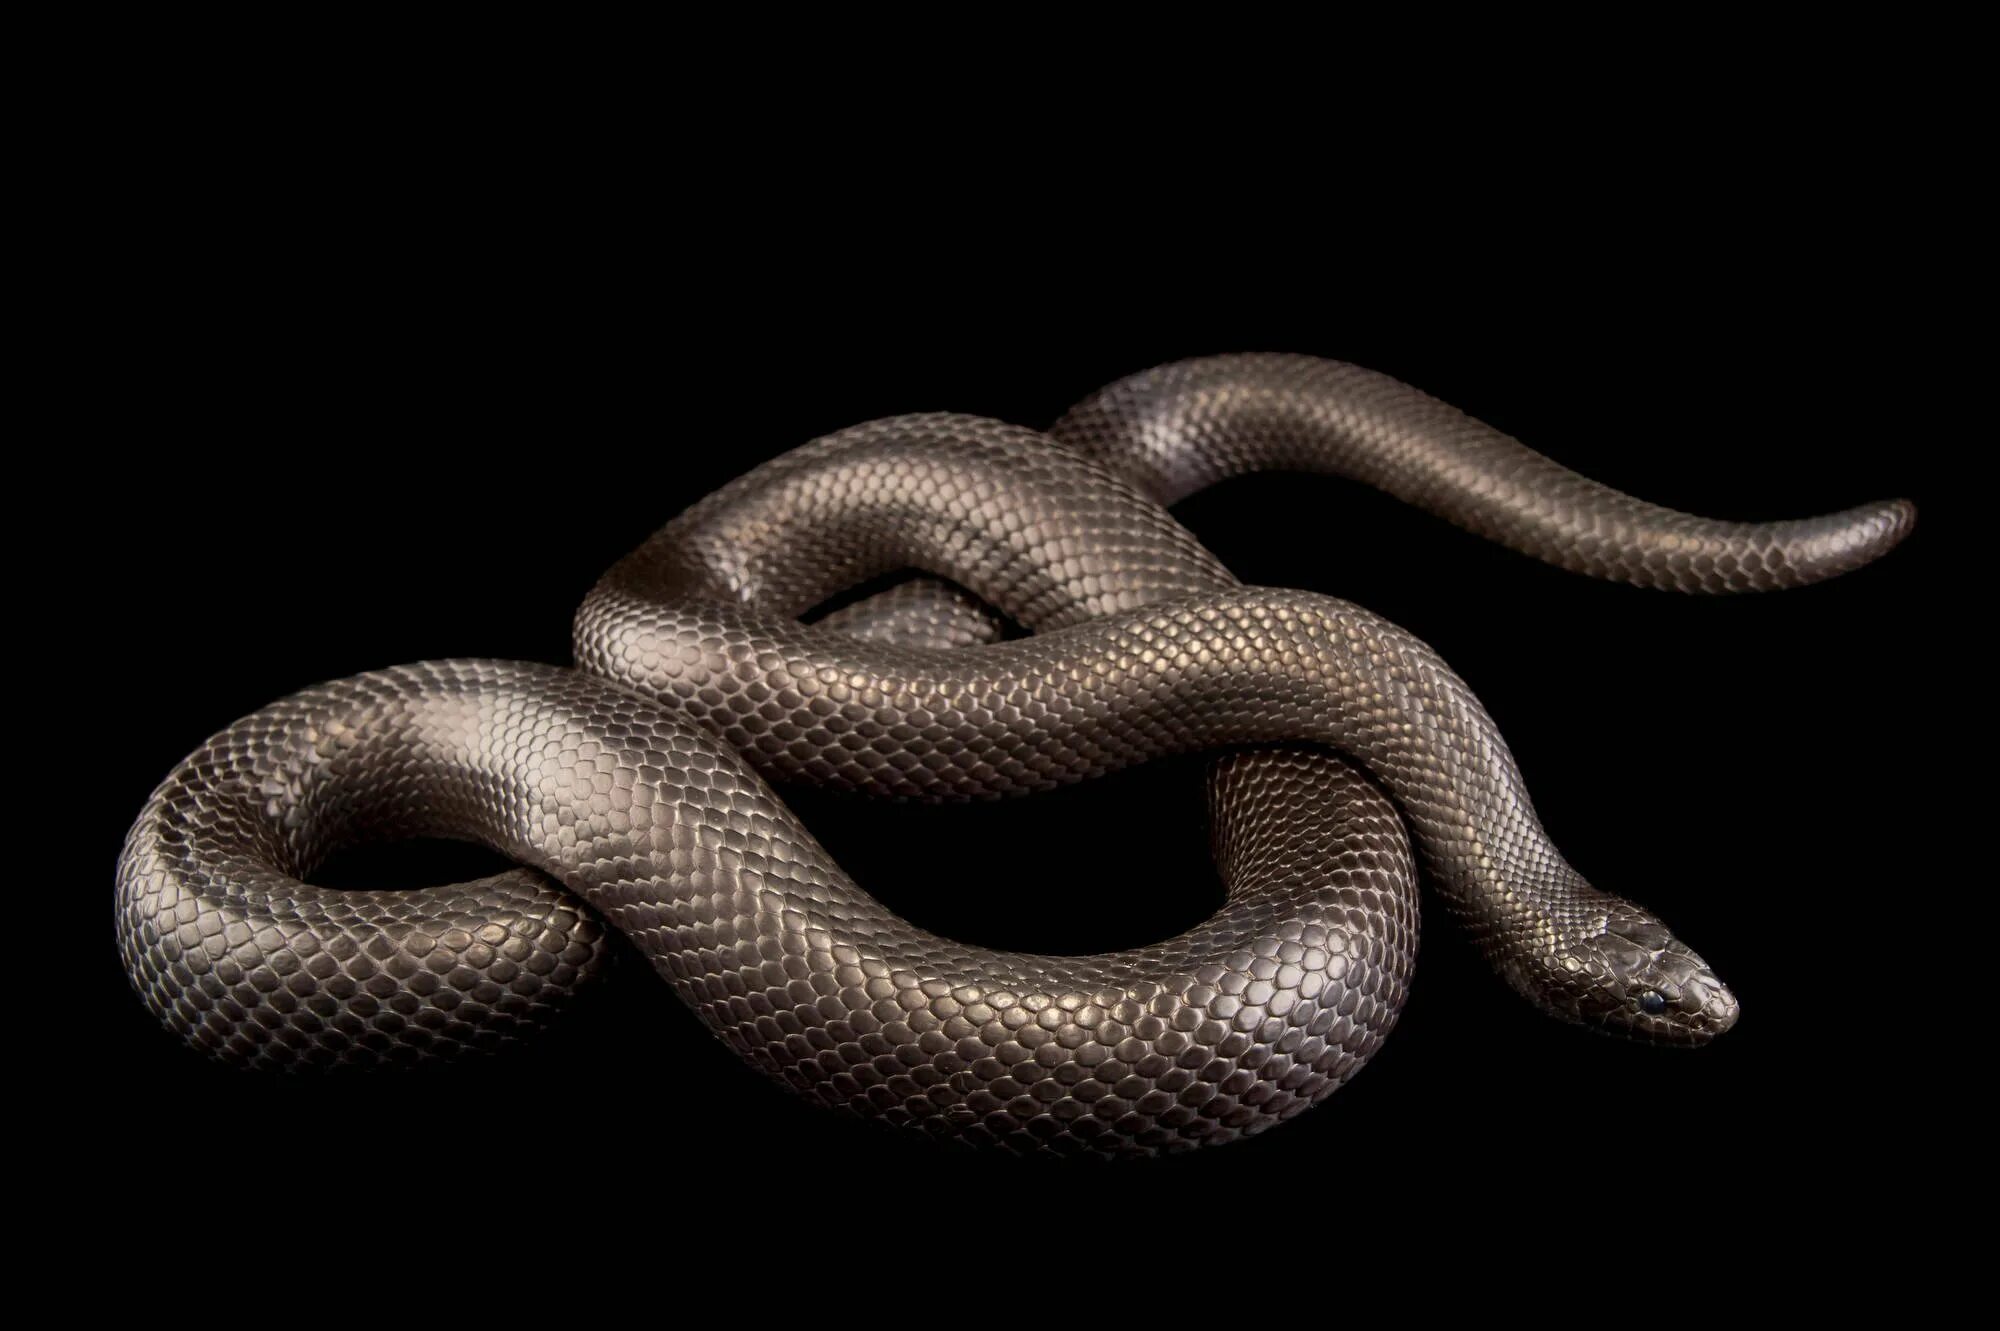 Хладнокровный змей. Lampropeltis getula Nigrita. Королевская змея нигрита. Адапазарская гадюка. Чёрная Королевская змея нигрита.